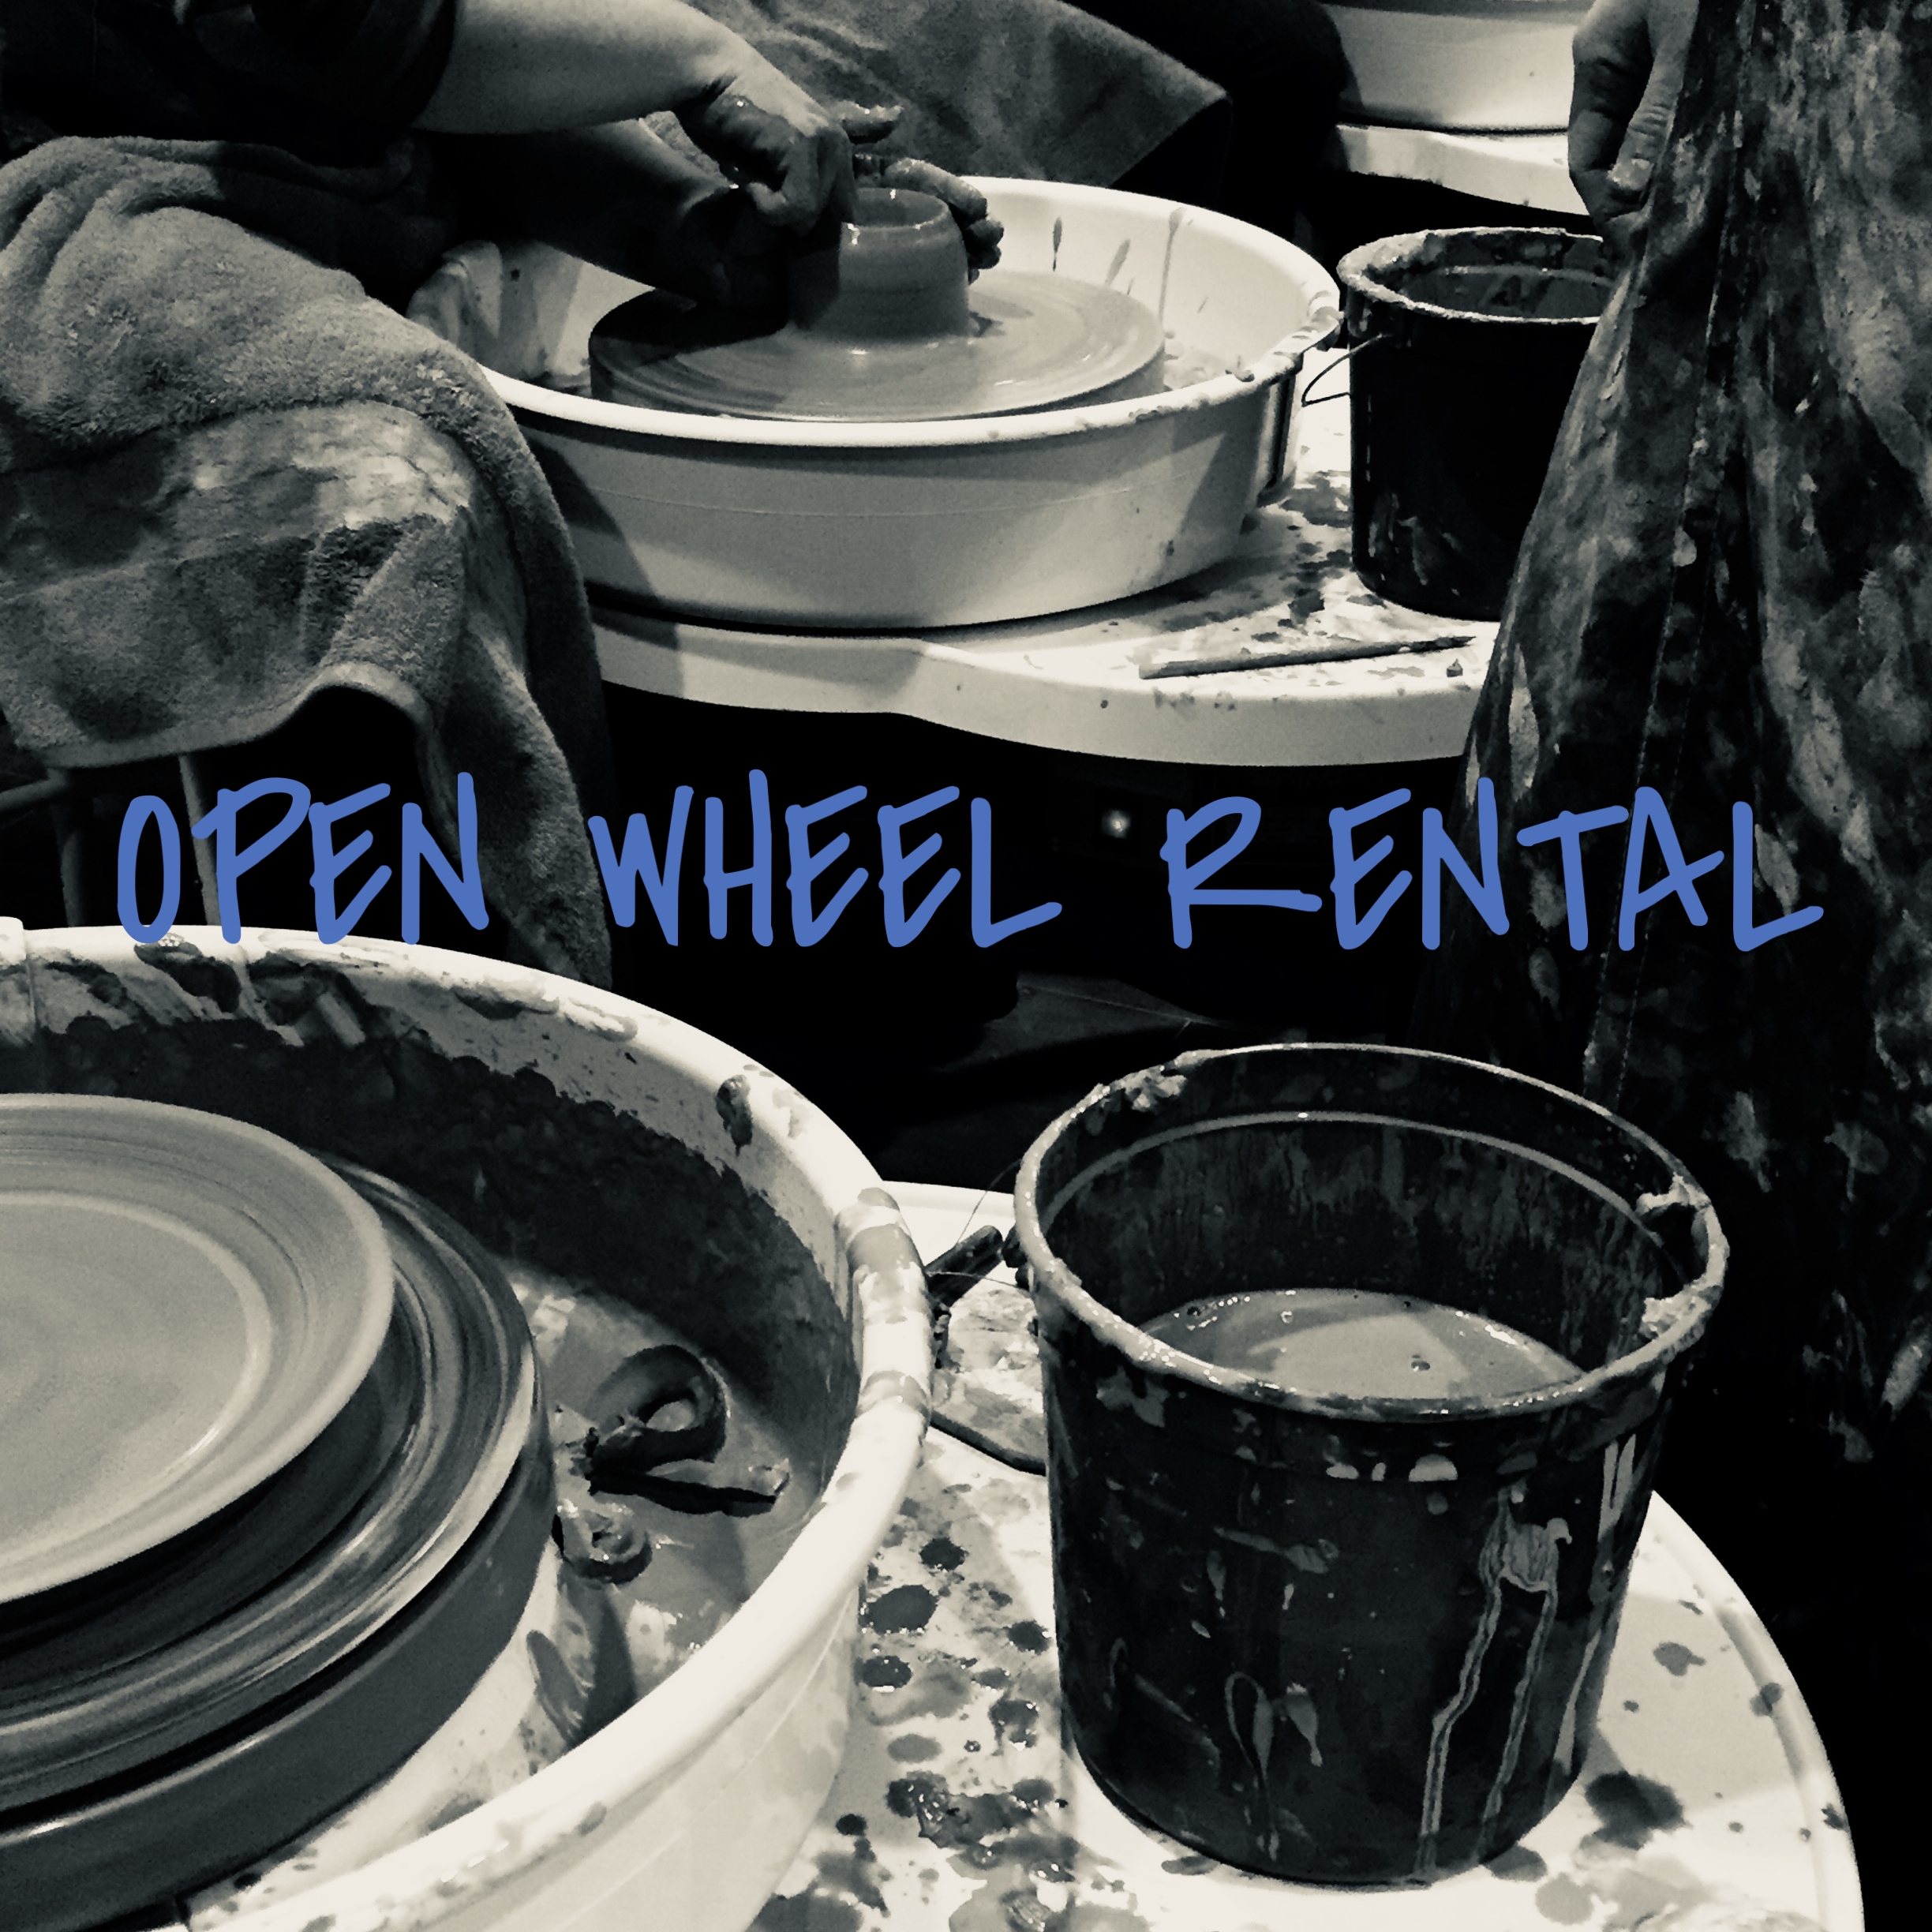 Pottery Wheel Rental - $35/wk